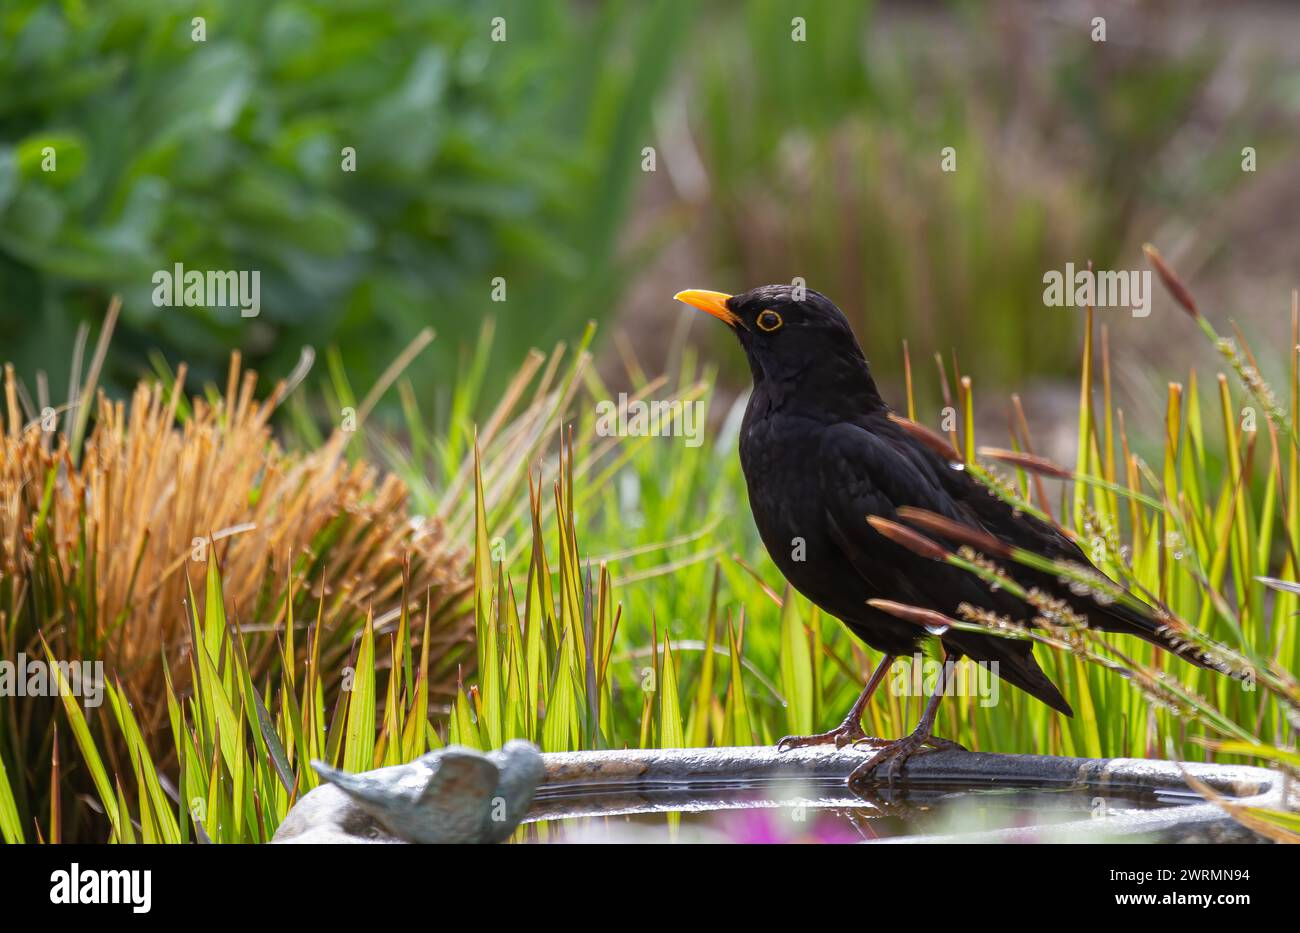 Un oiseau noir (turdus merula) assis sur un bain d'oiseaux avec des herbes en arrière-plan Banque D'Images